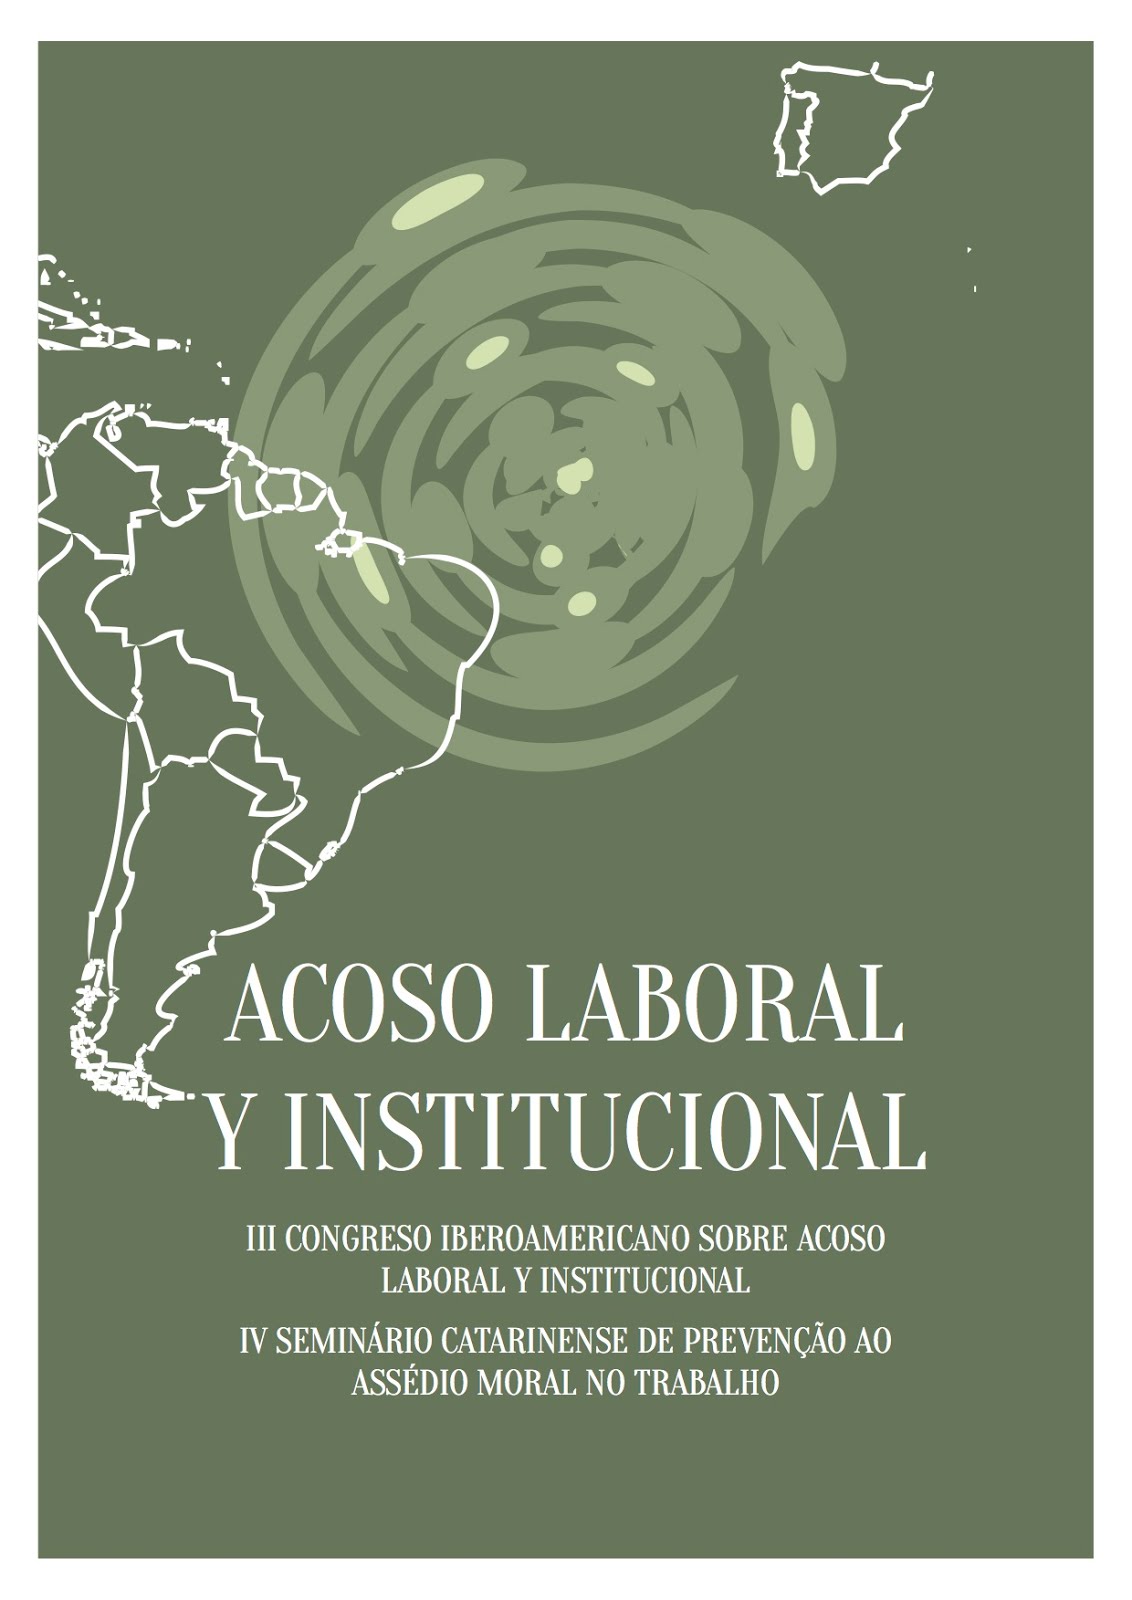 III Congreso Iberoamericano sobre Acoso Laboral y Institucional